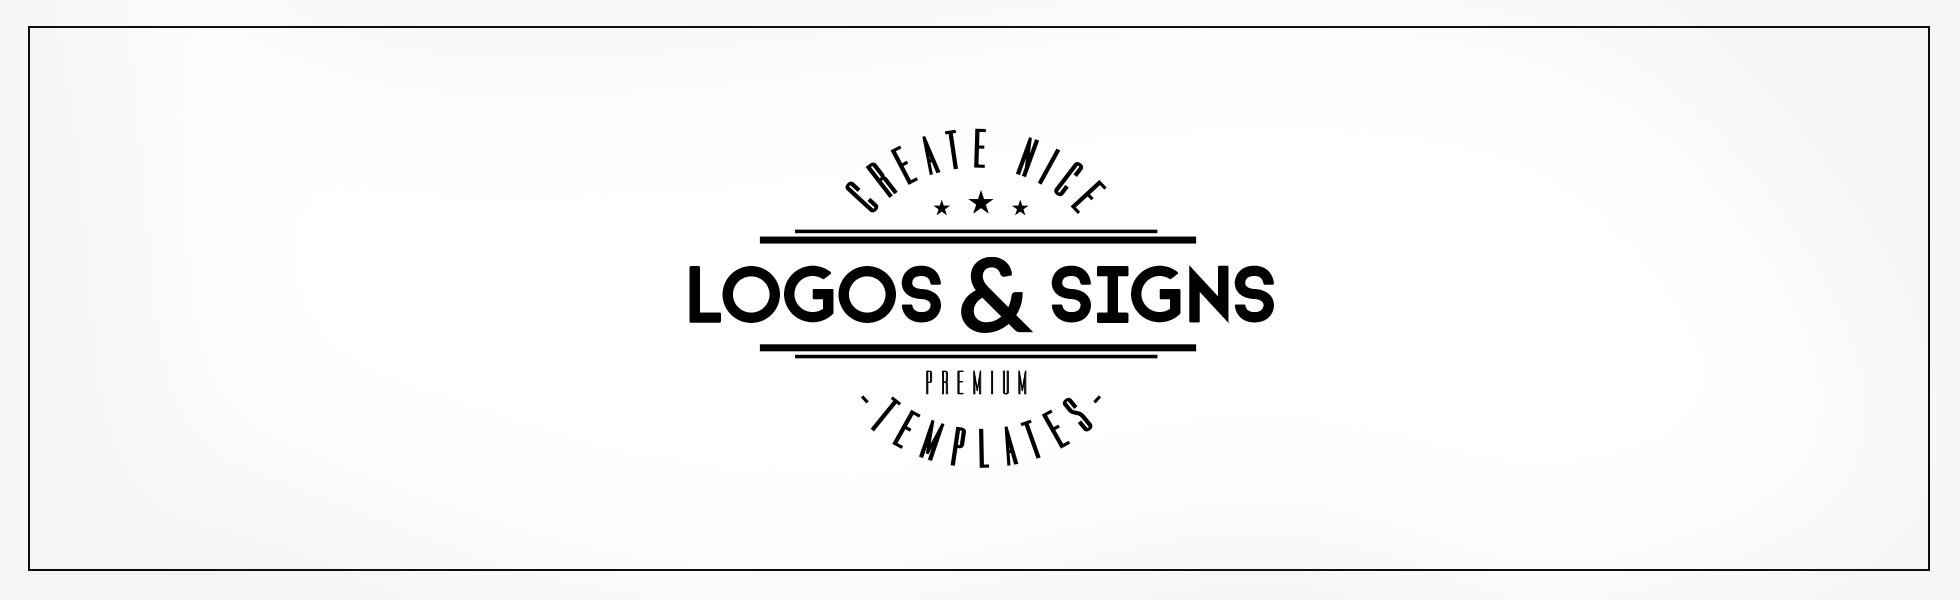 logo design t signlogostemp